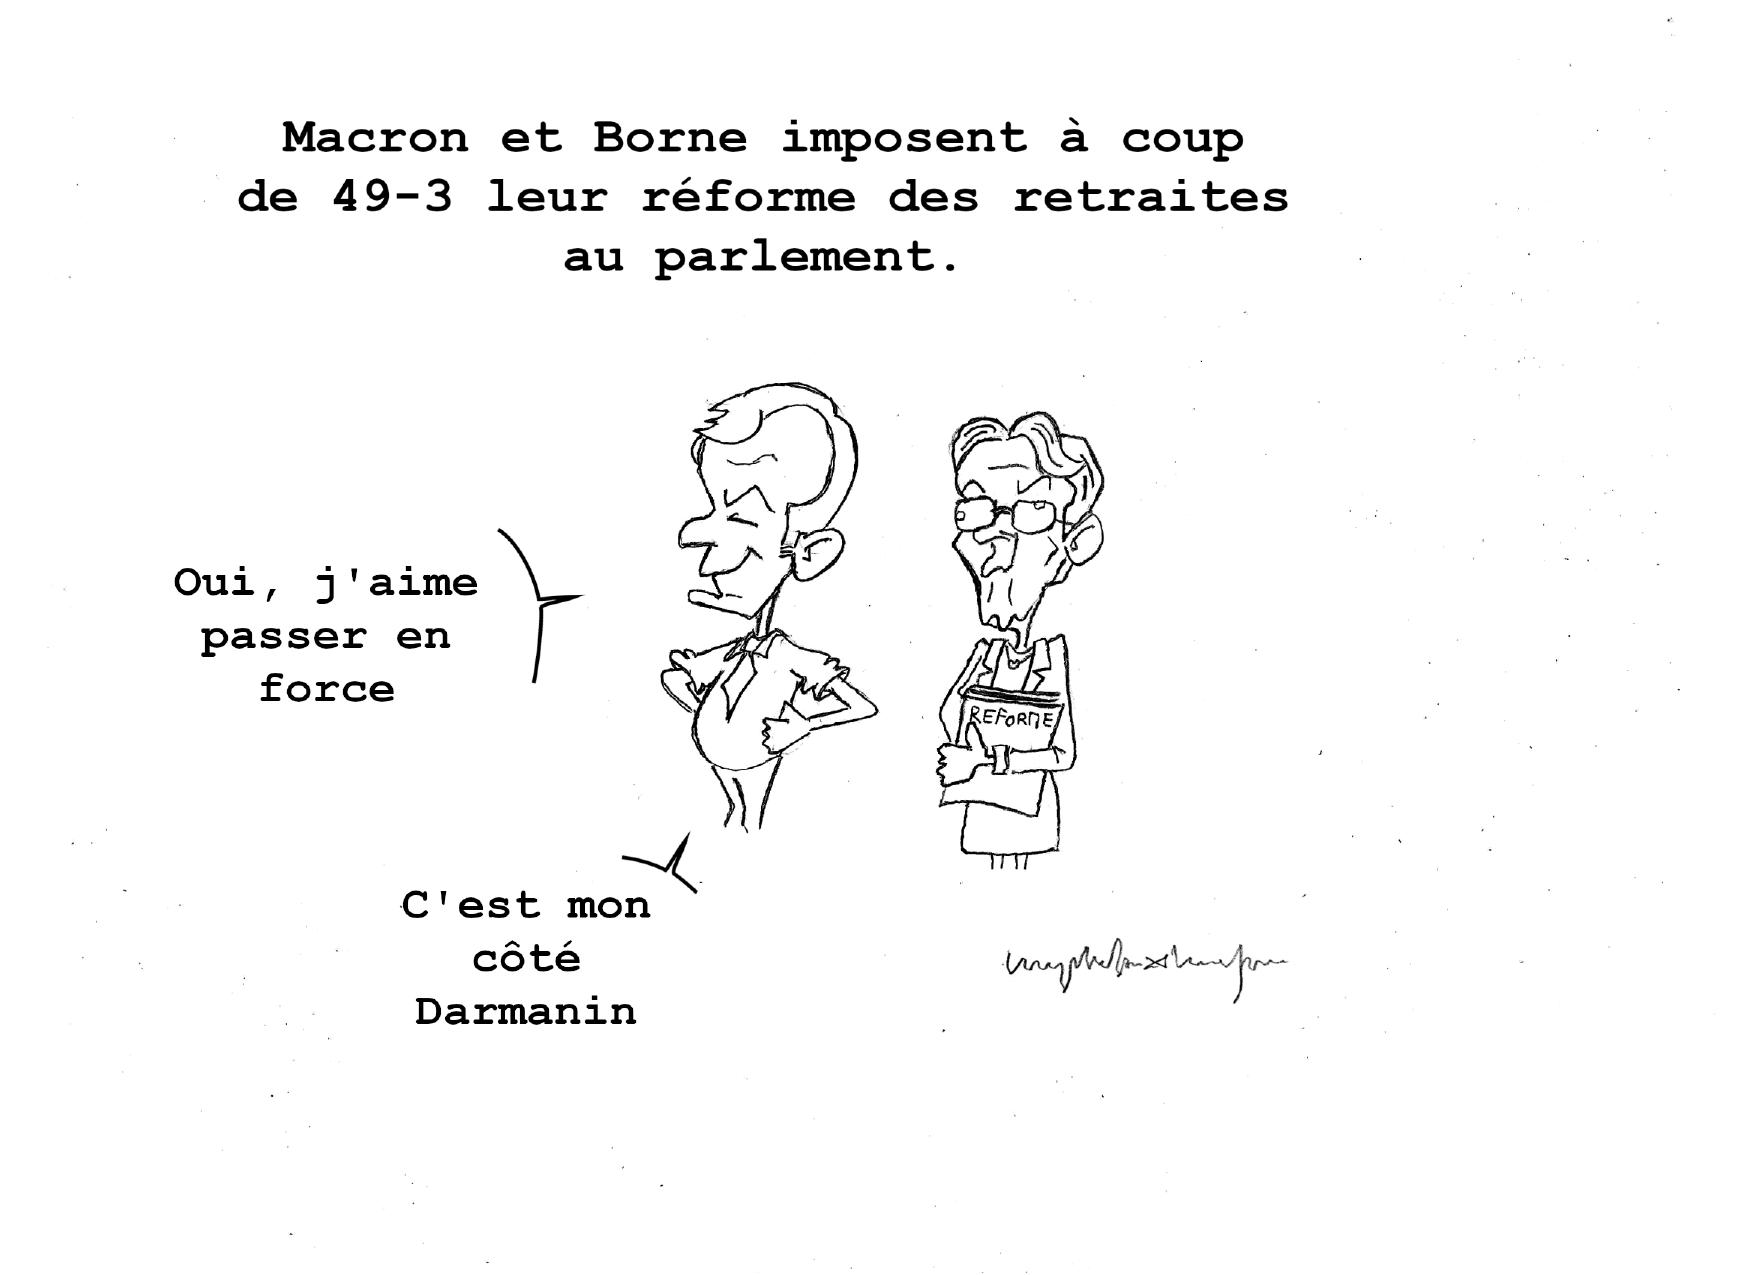 Sous le titre « Macron et Borne imposent à coup de 49-3 leur réforme des retraites au parlement », Emmanuel Macron et Élisabeth Borne se tiennent debout côte à côte. Macron, avec un air satisfait et un peu lubrique dit : « Oui, j'aime passer en force. C'est mon coté Darmanin. ». Élisabeth Borne tient un porte-documents portant la mention « Réforme ». Elle a l'air bête et perdue, ne réagit pas.